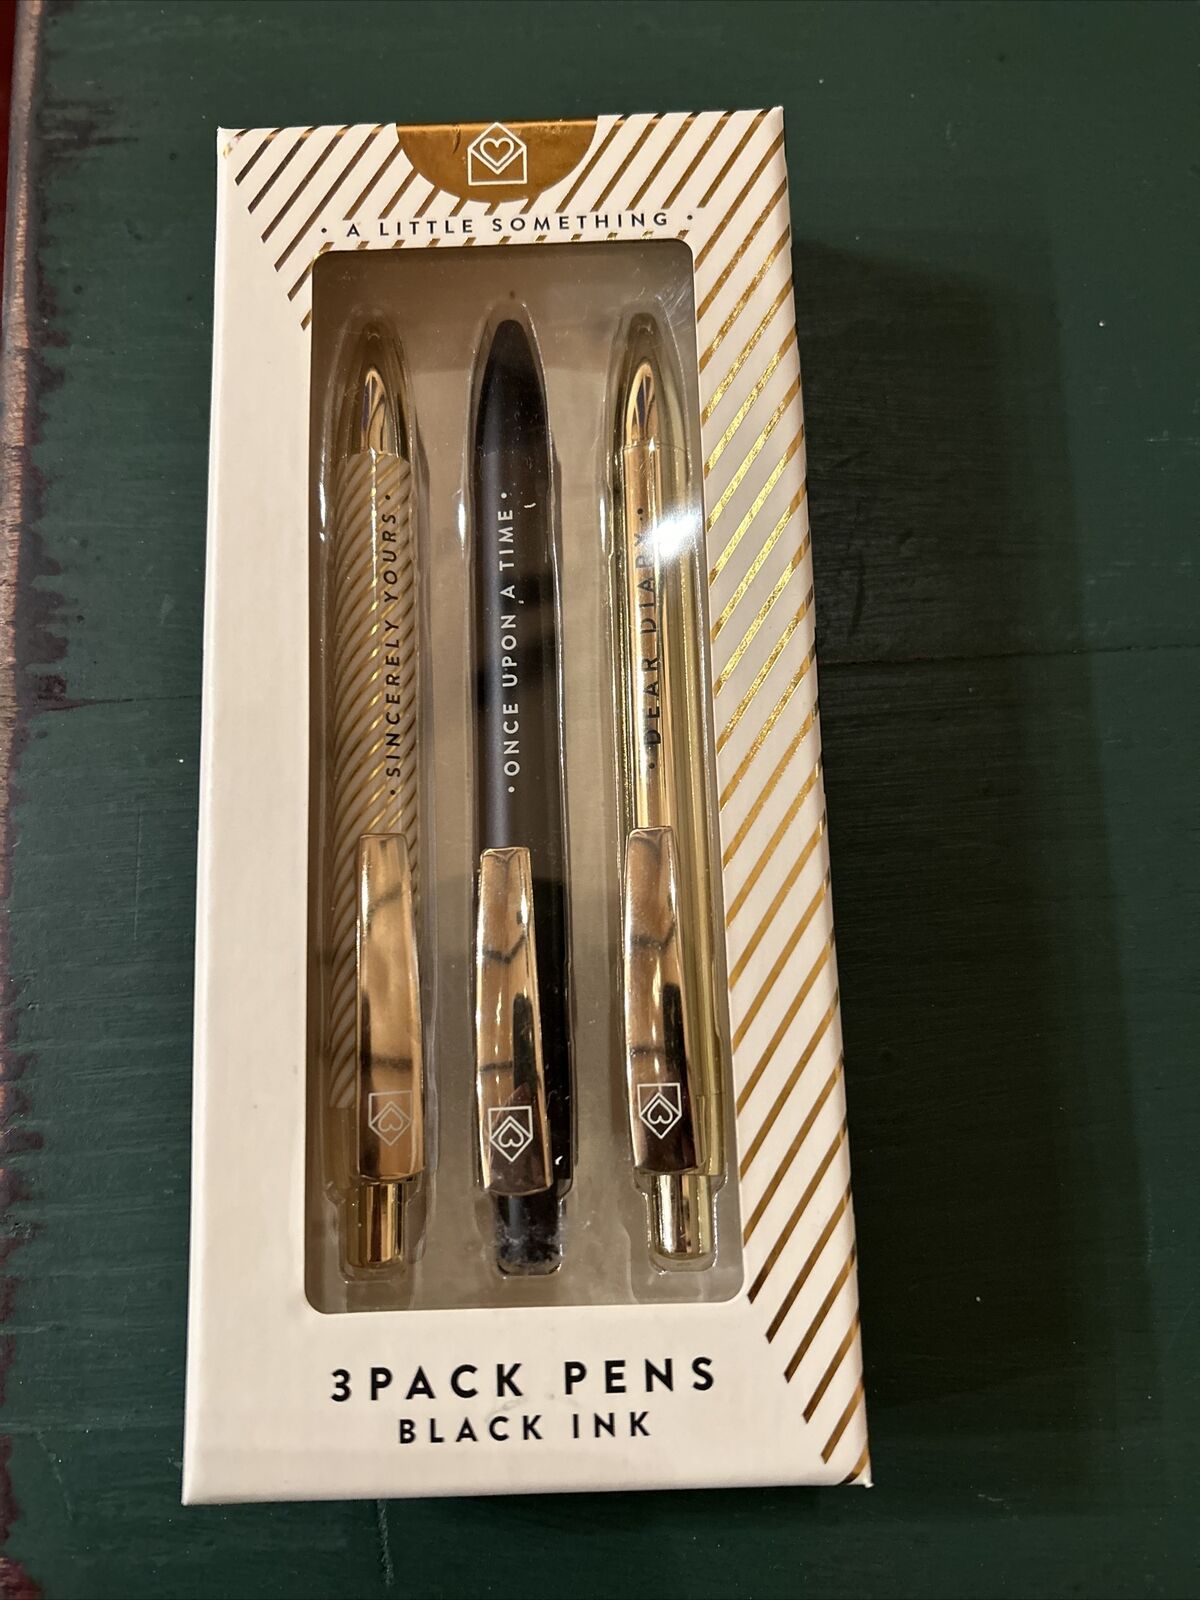 New 3 Pack Pen Black Ink Gift Set